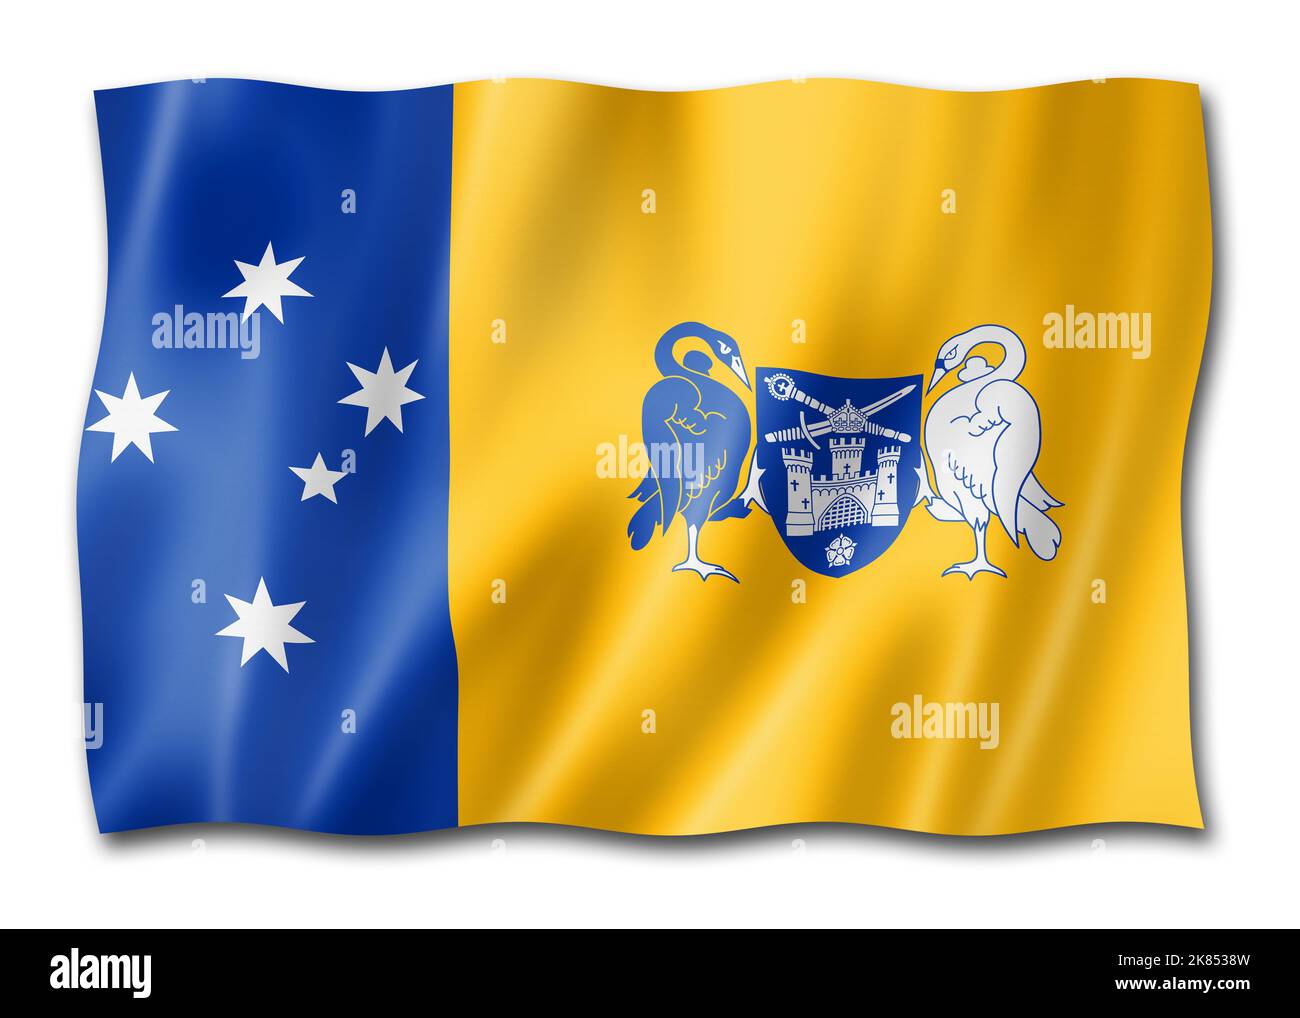 La ville de Canberra et le drapeau du territoire de la capitale australienne, collection de banderoles de l'Australie.Illustration 3D Banque D'Images